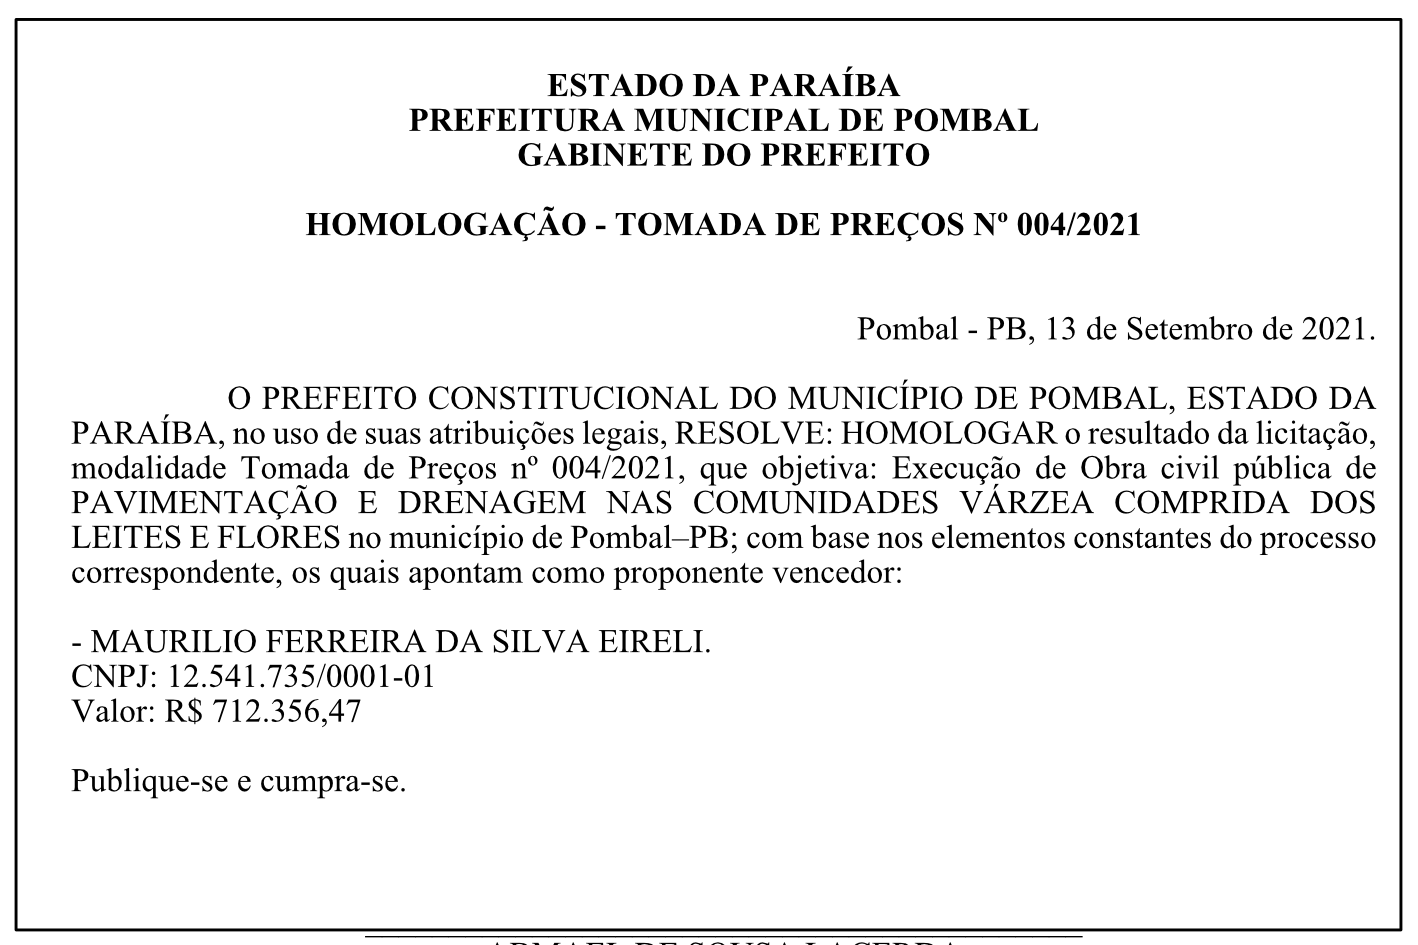 PREFEITURA MUNICIPAL DE POMBAL – GABINETE DO PREFEITO – HOMOLOGAÇÃO – TOMADA DE PREÇOS Nº 004/2021